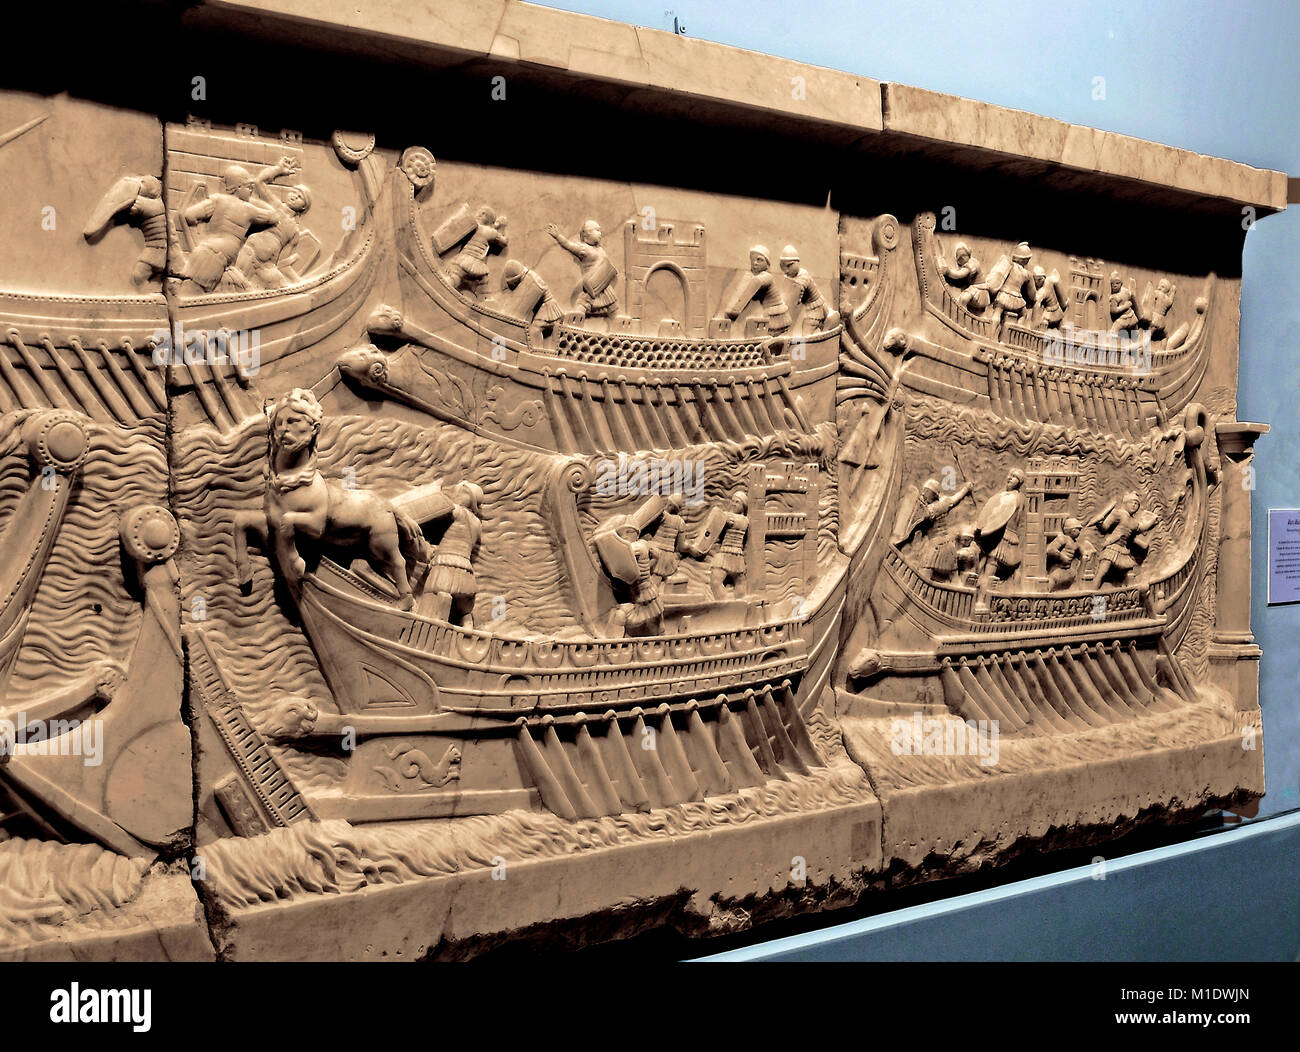 Allégement romain, bataille navale d'Actium, 1er siècle, Duques de Cardona Collection, Cordoue, Andalousie, Espagne, Europe Banque D'Images